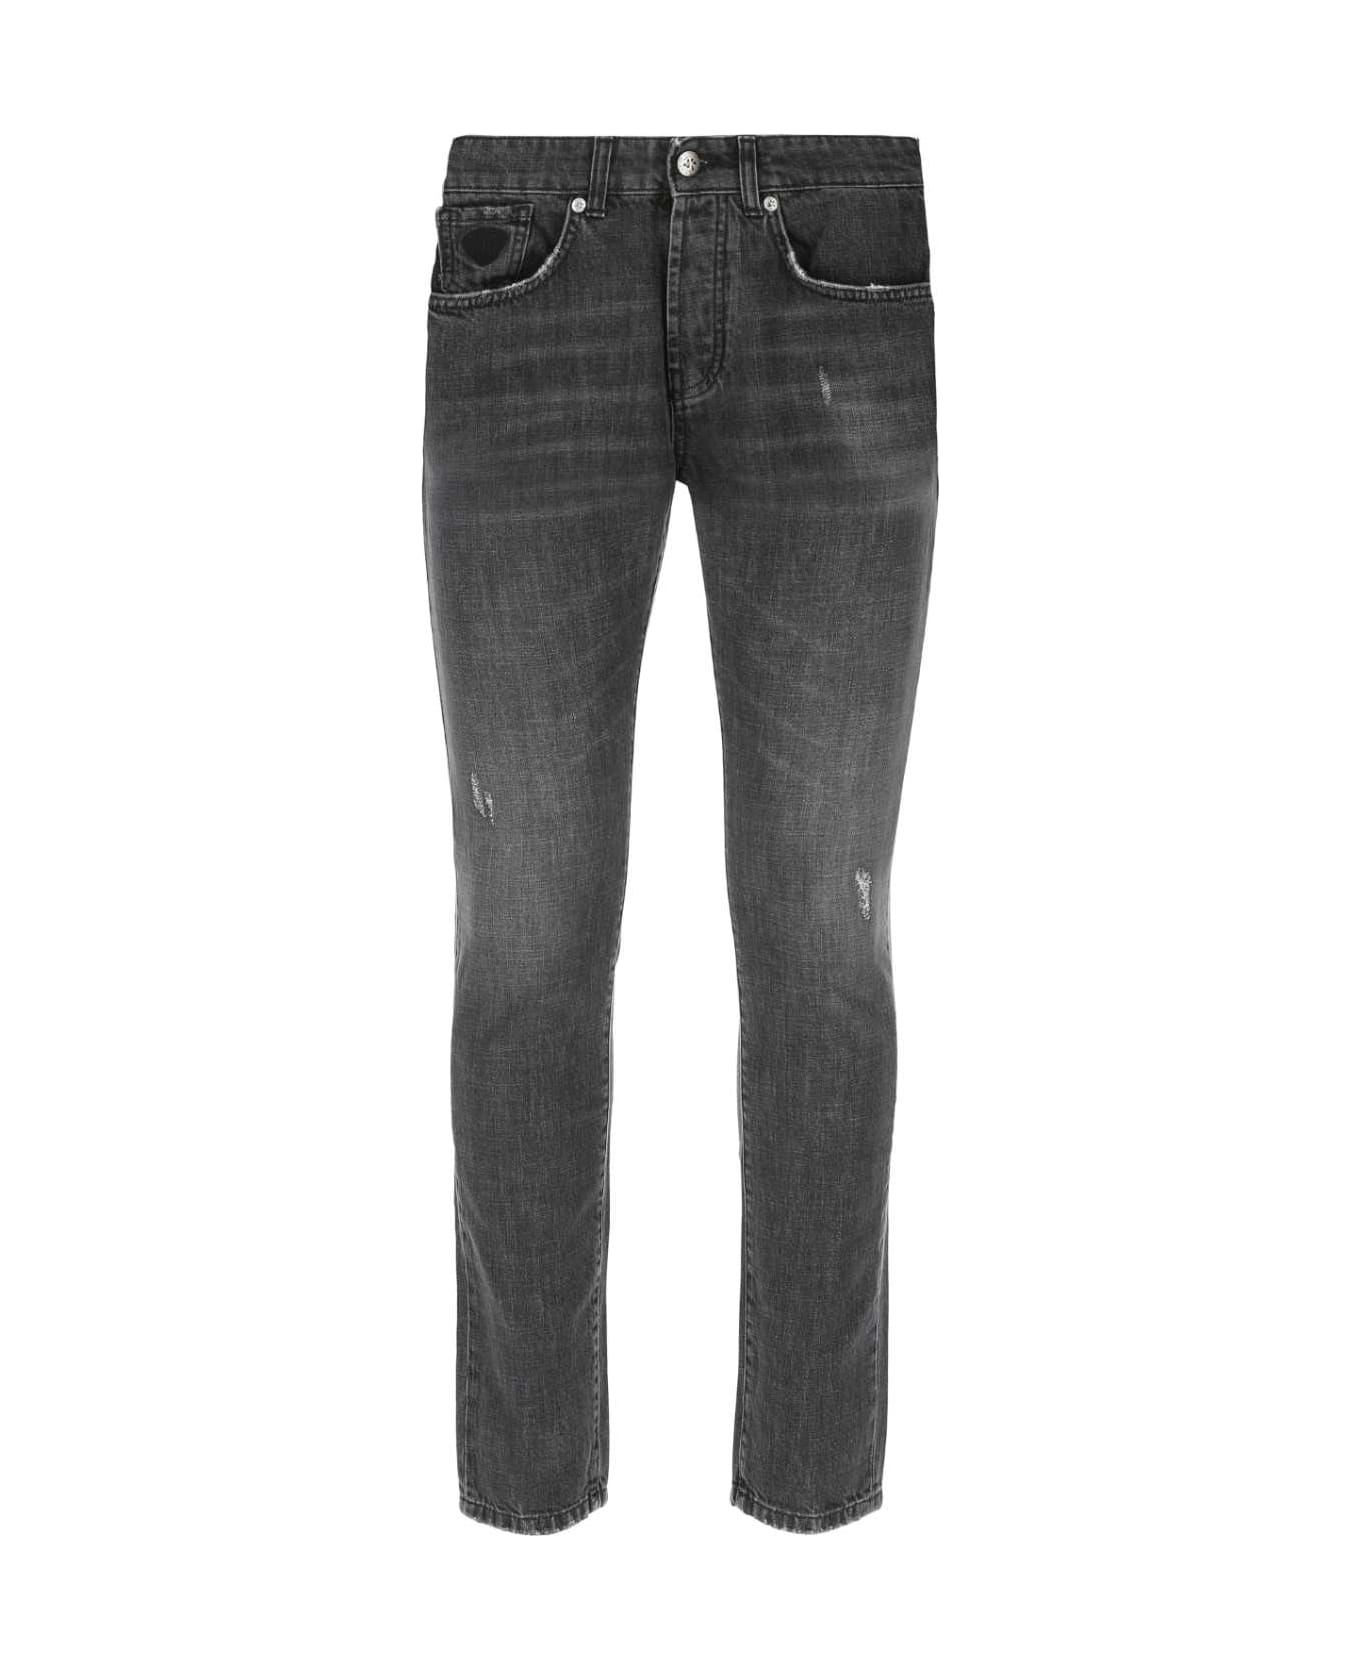 John Richmond Charcoal Grey Denim Jeans - DBLACK